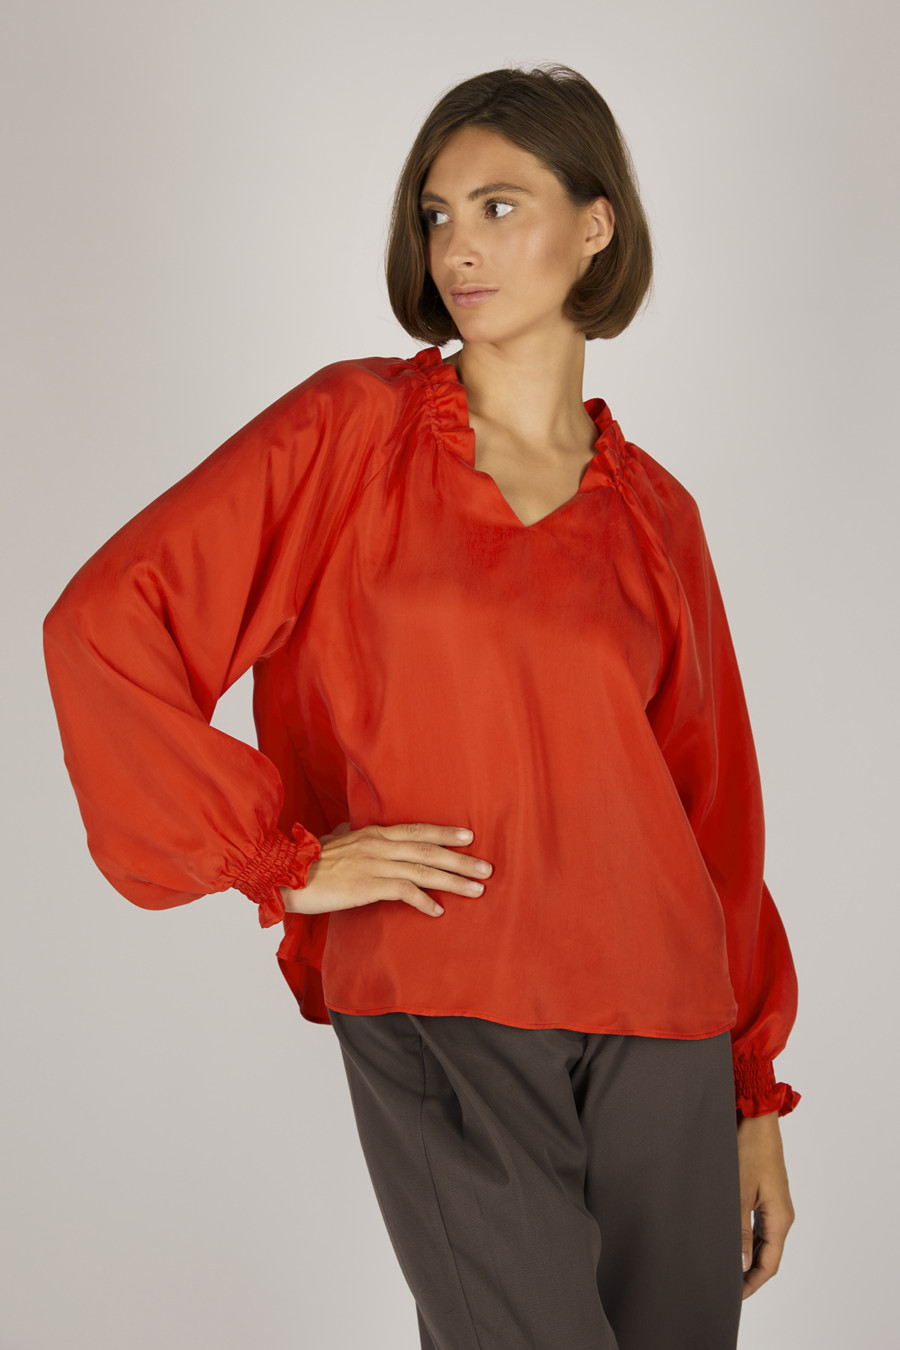 PARIS – Hemdbluse mit gesmockten Manschetten – Farbe: Red Hot